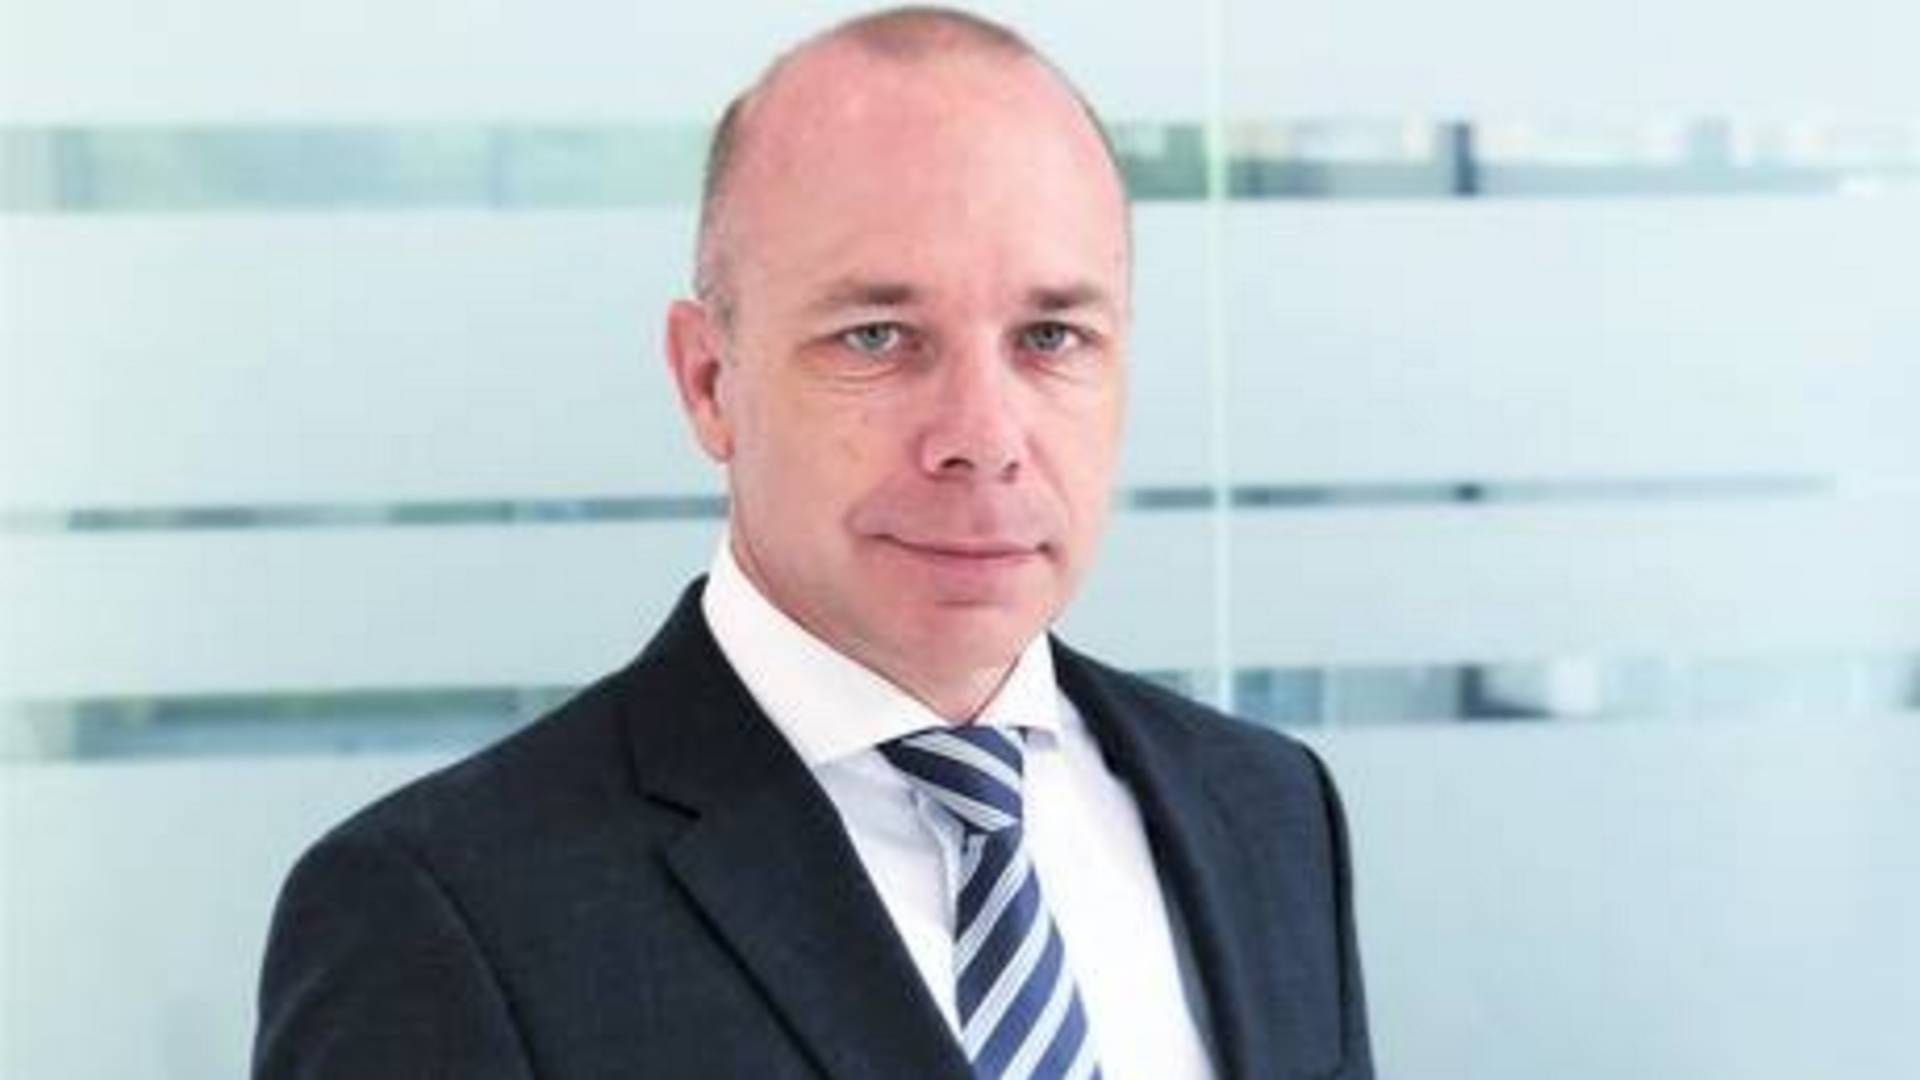 Lars Banke er topchef for Maersk Decom, der er et joint venture mellem Maersk Supply Service og Maersk Drilling. | Foto: Lars Banke er blevet sat i spidsen for Maersk Decom, der har sit hovedkontor i Lyngby